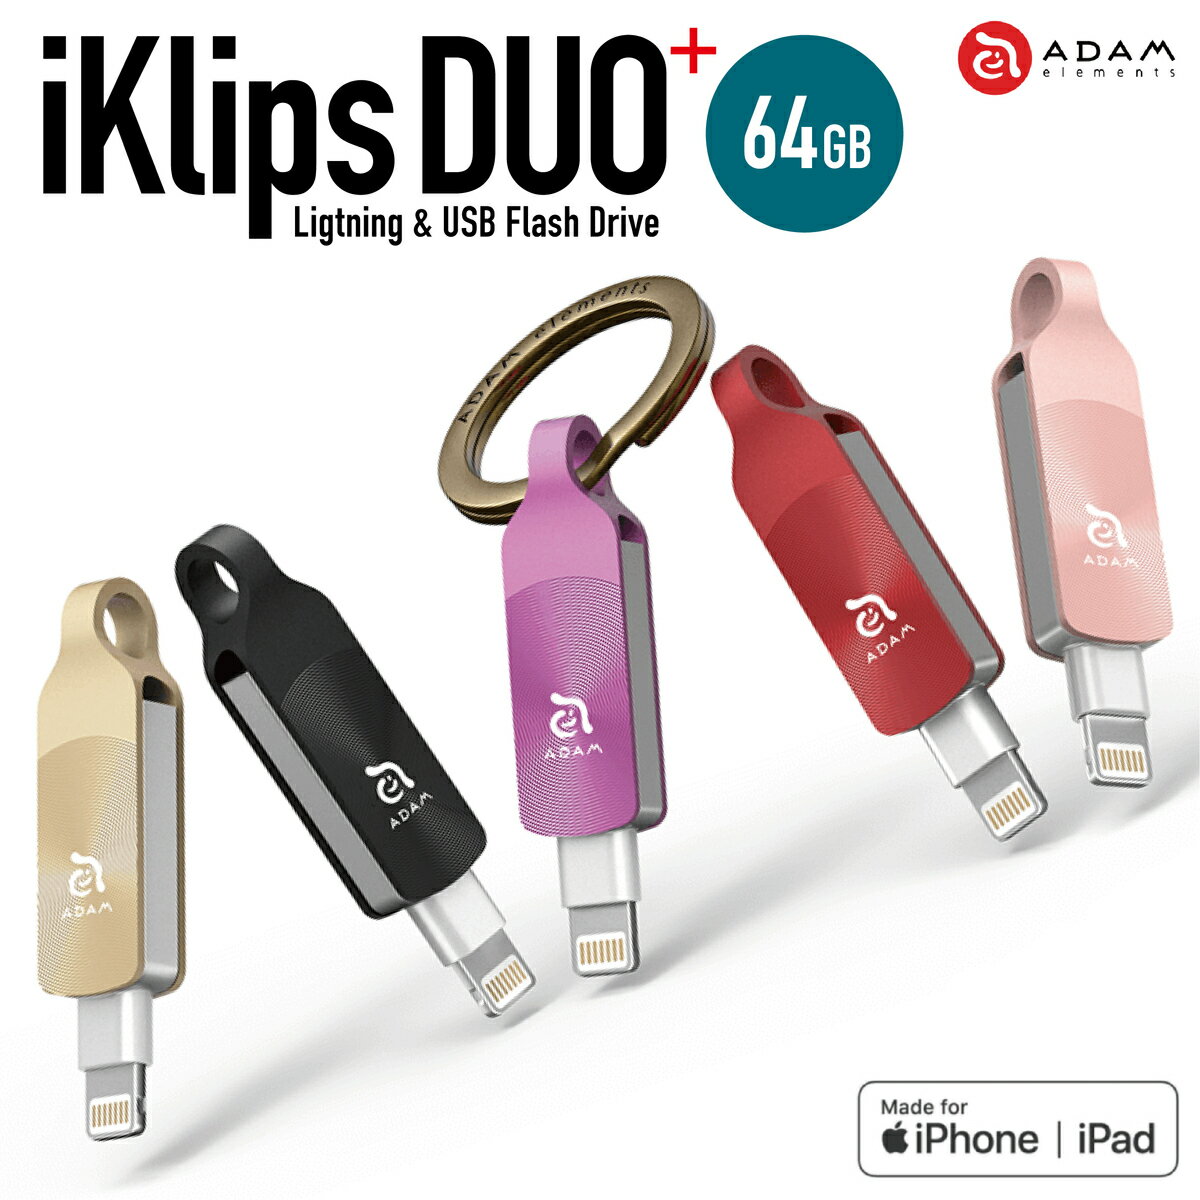 ADAM elements iKlips DUO+ 64GB Lightning USBメ